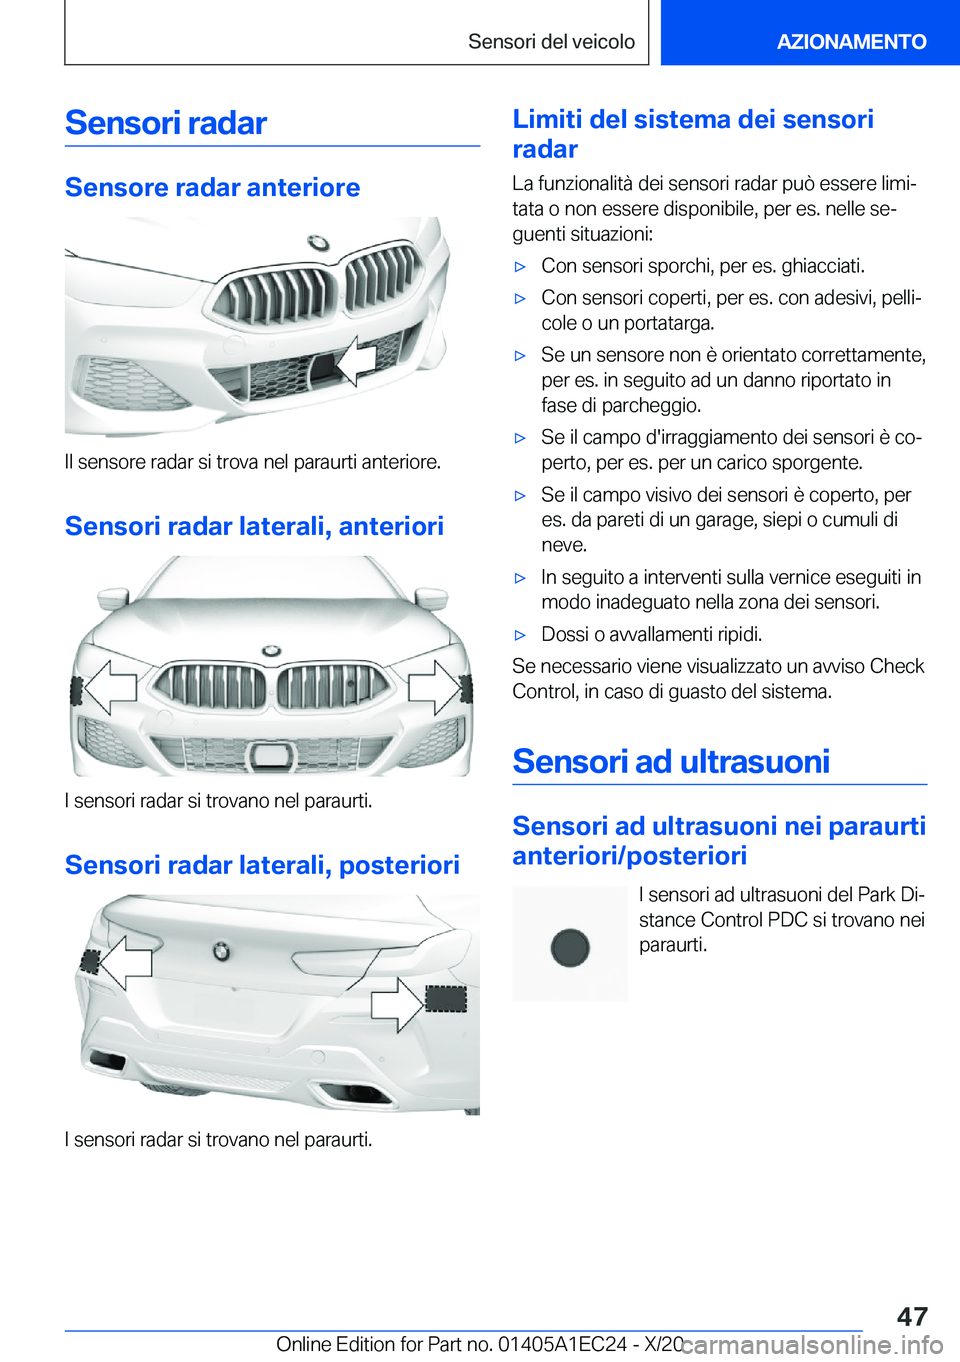 BMW 8 SERIES GRAN COUPE 2021  Libretti Di Uso E manutenzione (in Italian) �S�e�n�s�o�r�i��r�a�d�a�r
�S�e�n�s�o�r�e��r�a�d�a�r��a�n�t�e�r�i�o�r�e
�I�l��s�e�n�s�o�r�e��r�a�d�a�r��s�i��t�r�o�v�a��n�e�l��p�a�r�a�u�r�t�i��a�n�t�e�r�i�o�r�e�.�S�e�n�s�o�r�i��r�a�d�a�r�